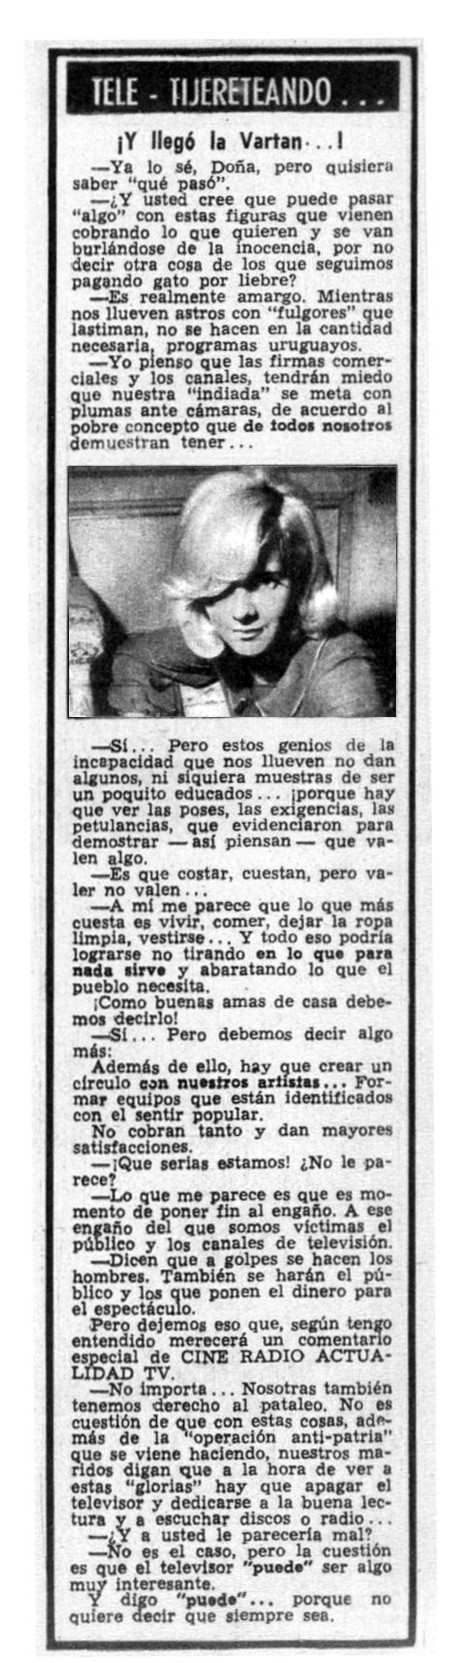 "Actualidad" Uruguay 1965 Article "Y llego la Vartan"